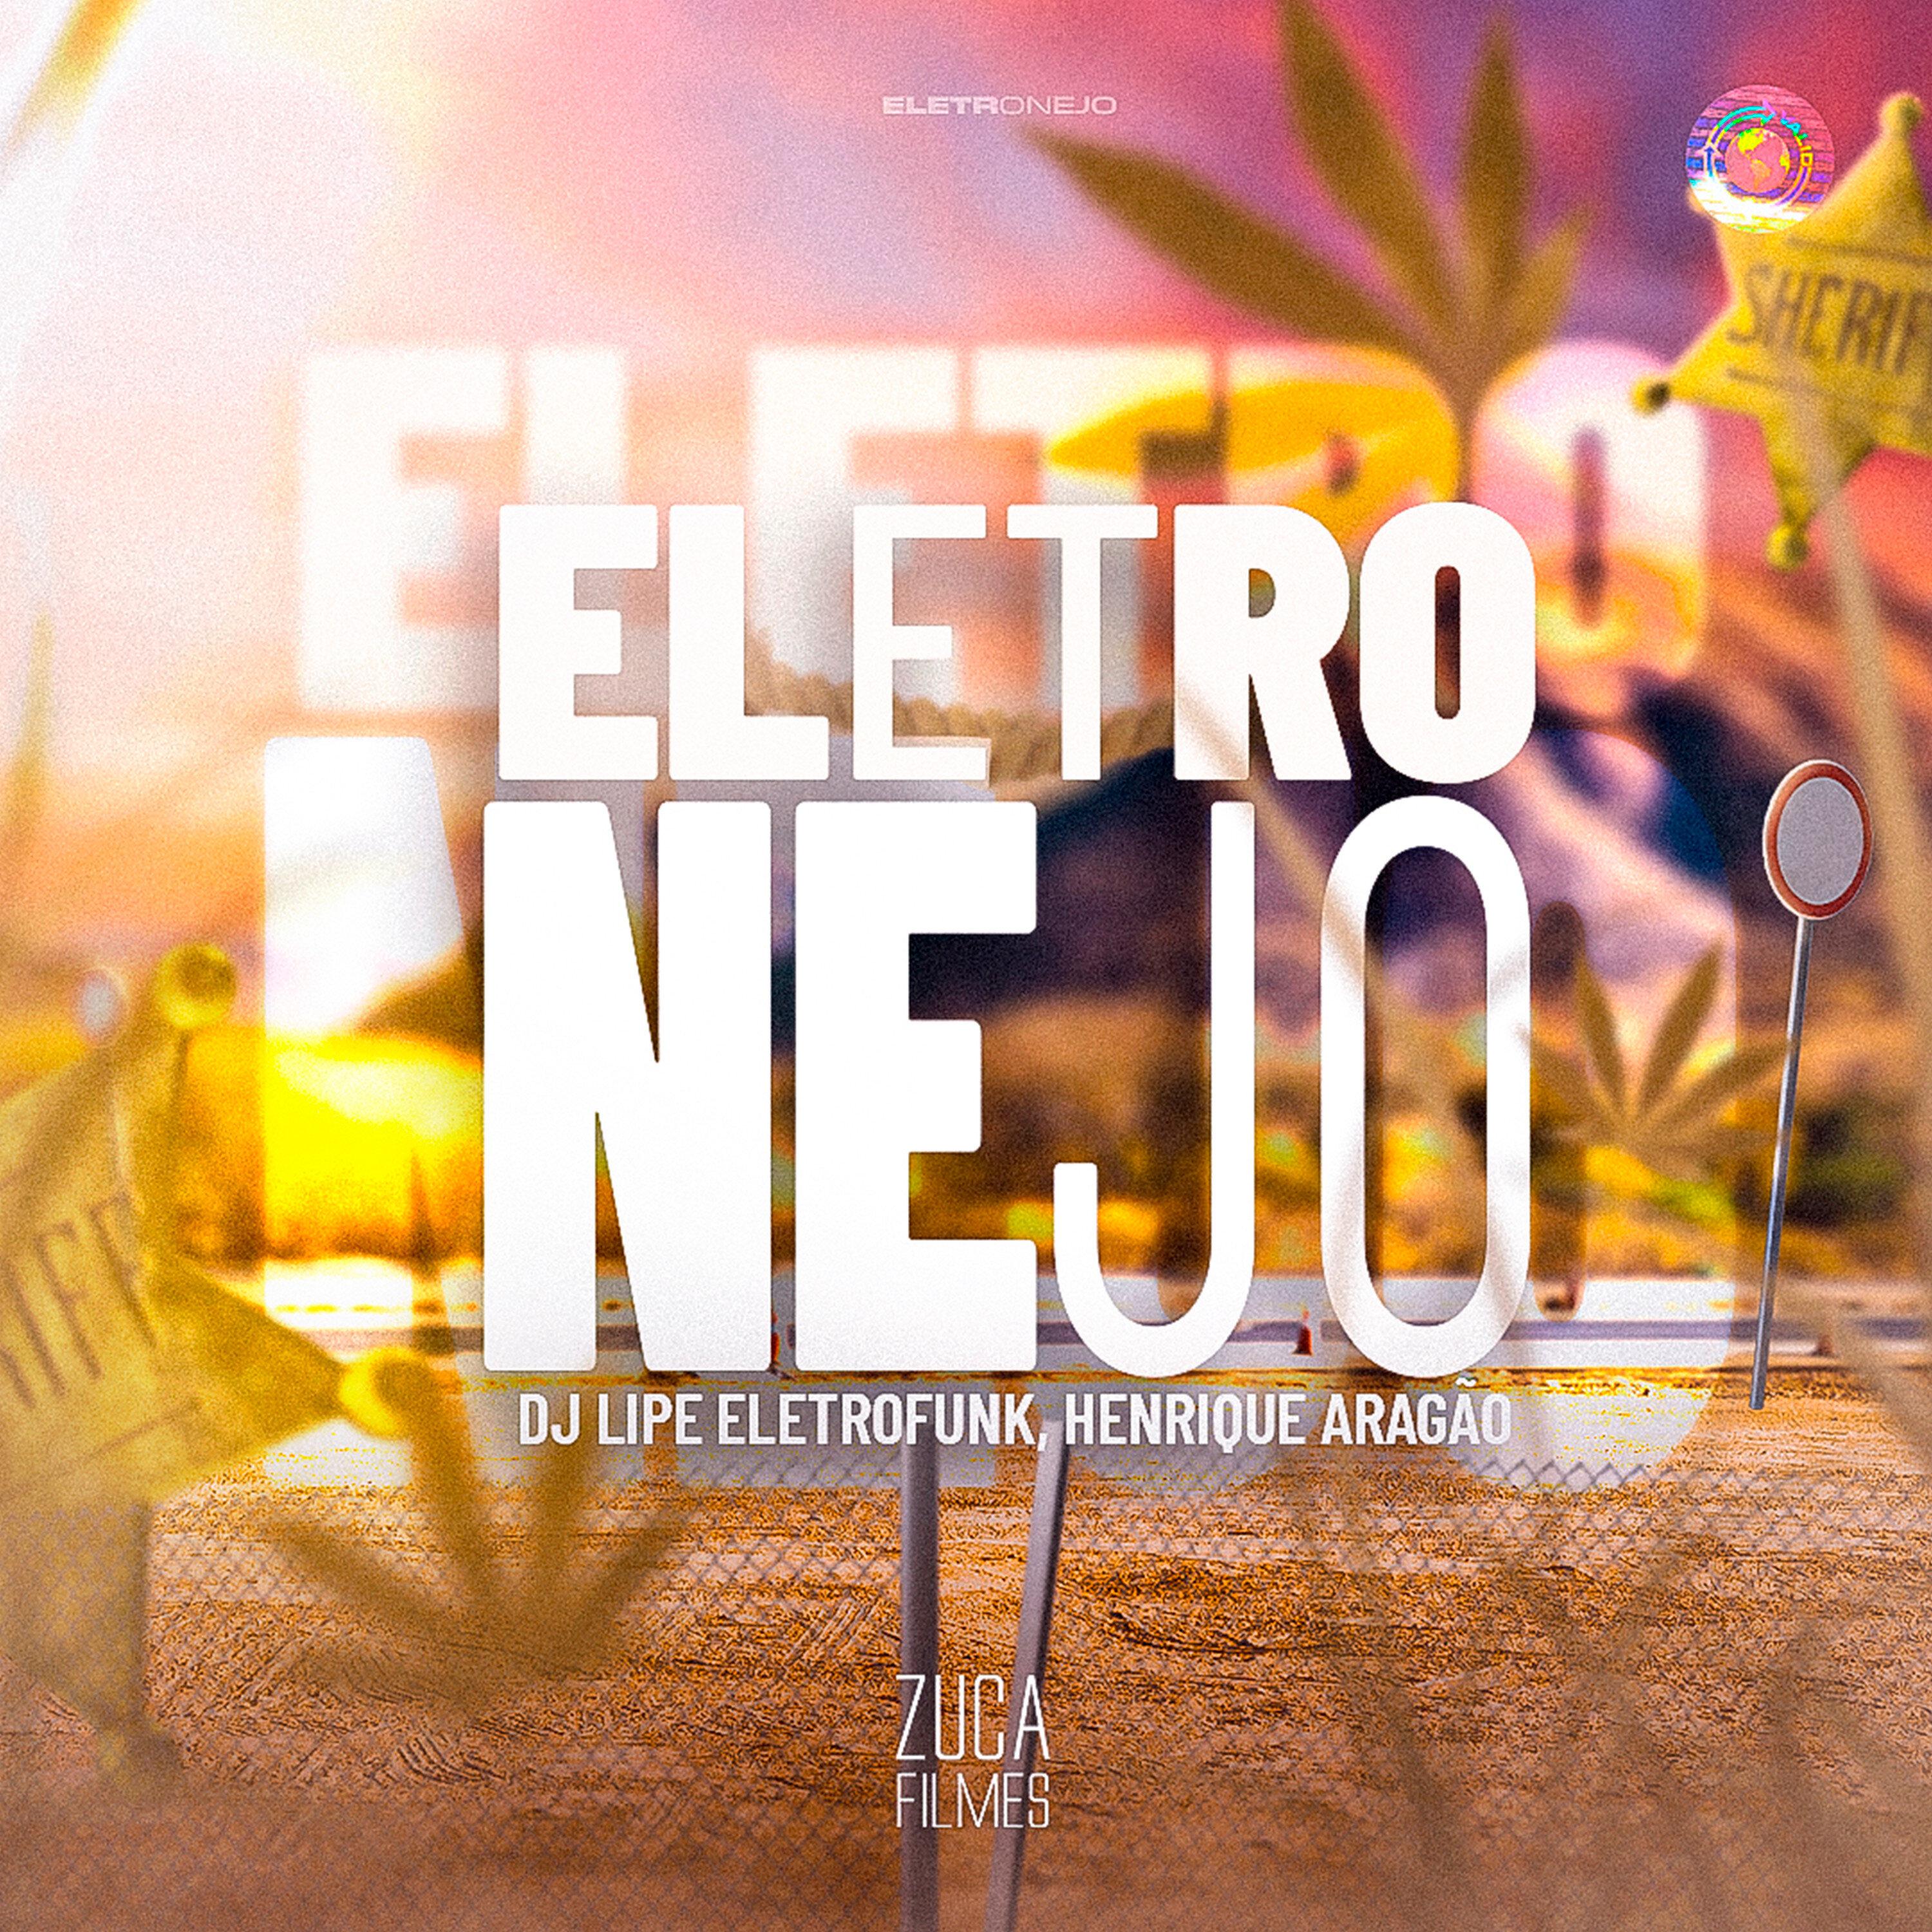 DJ Lipe EletroFunk - Eletronejo